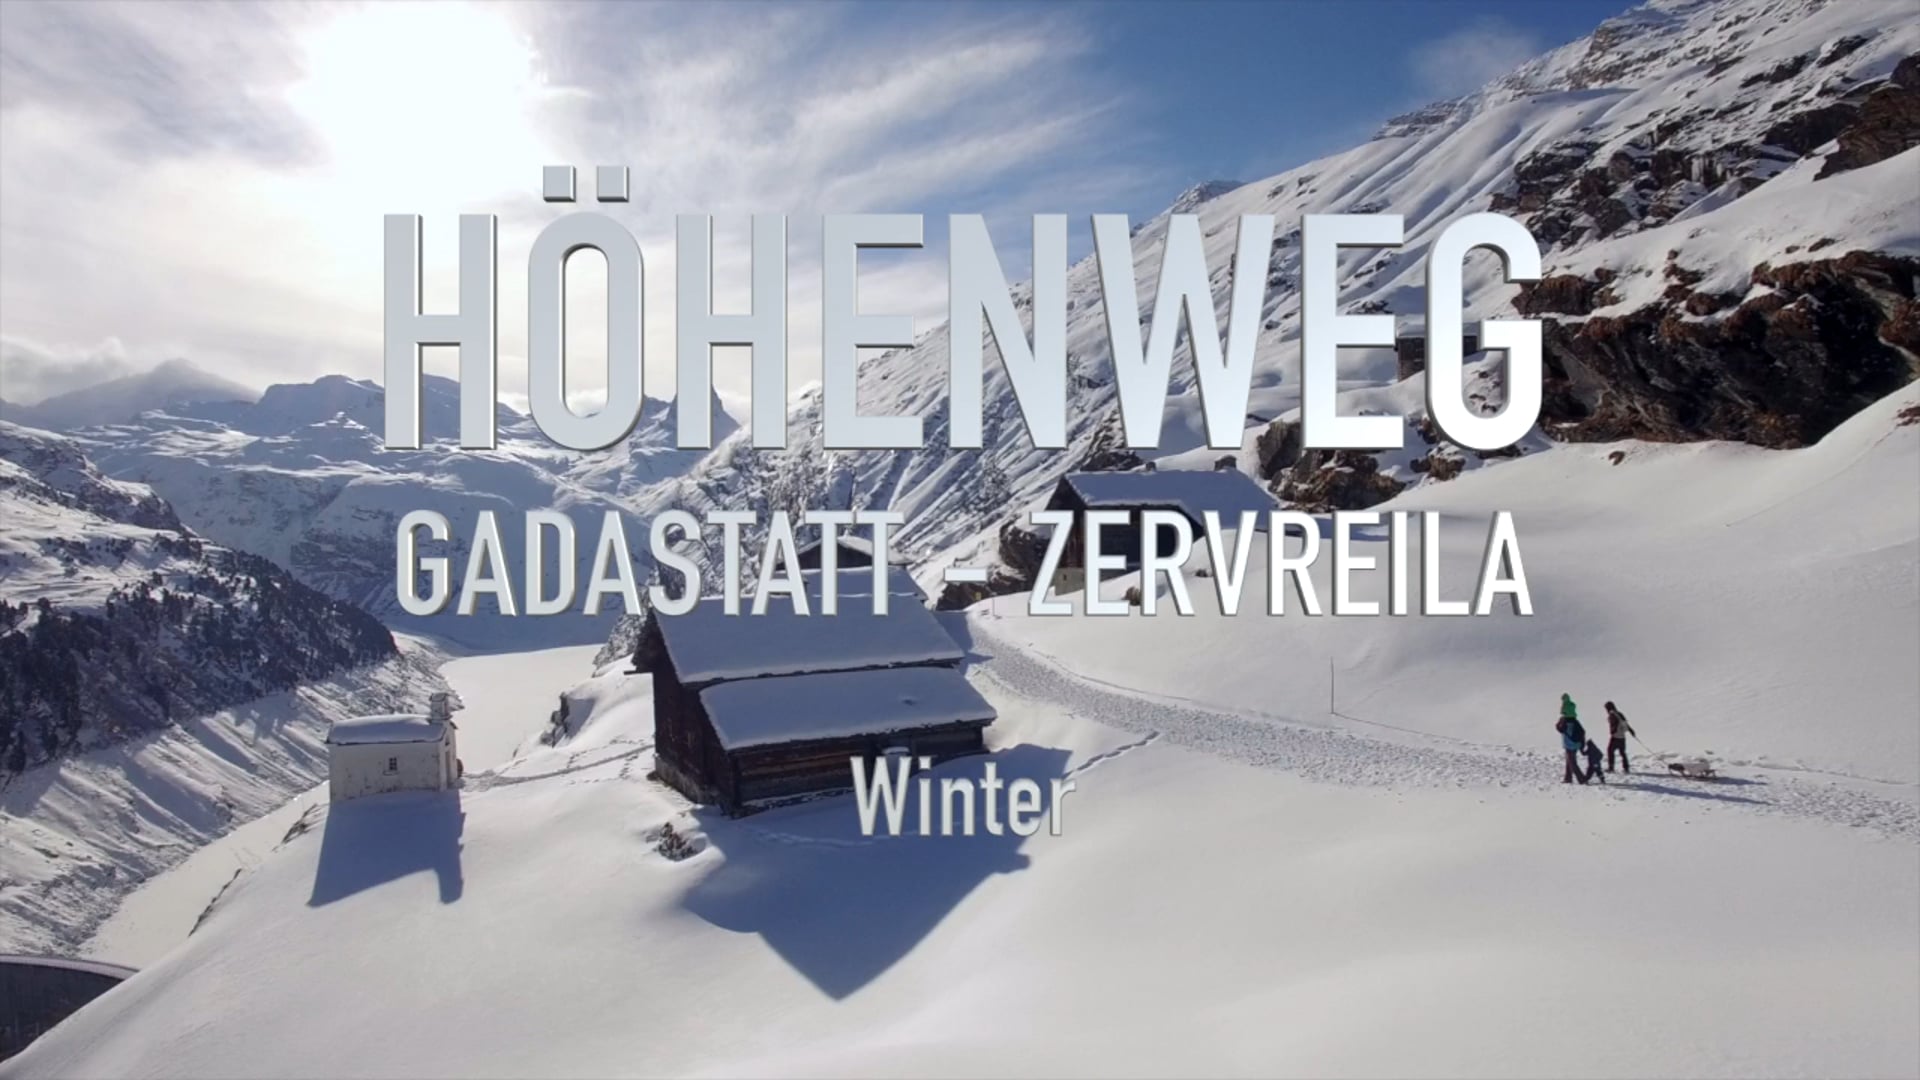 Höhenweg Gadastatt-Zervreila Winter